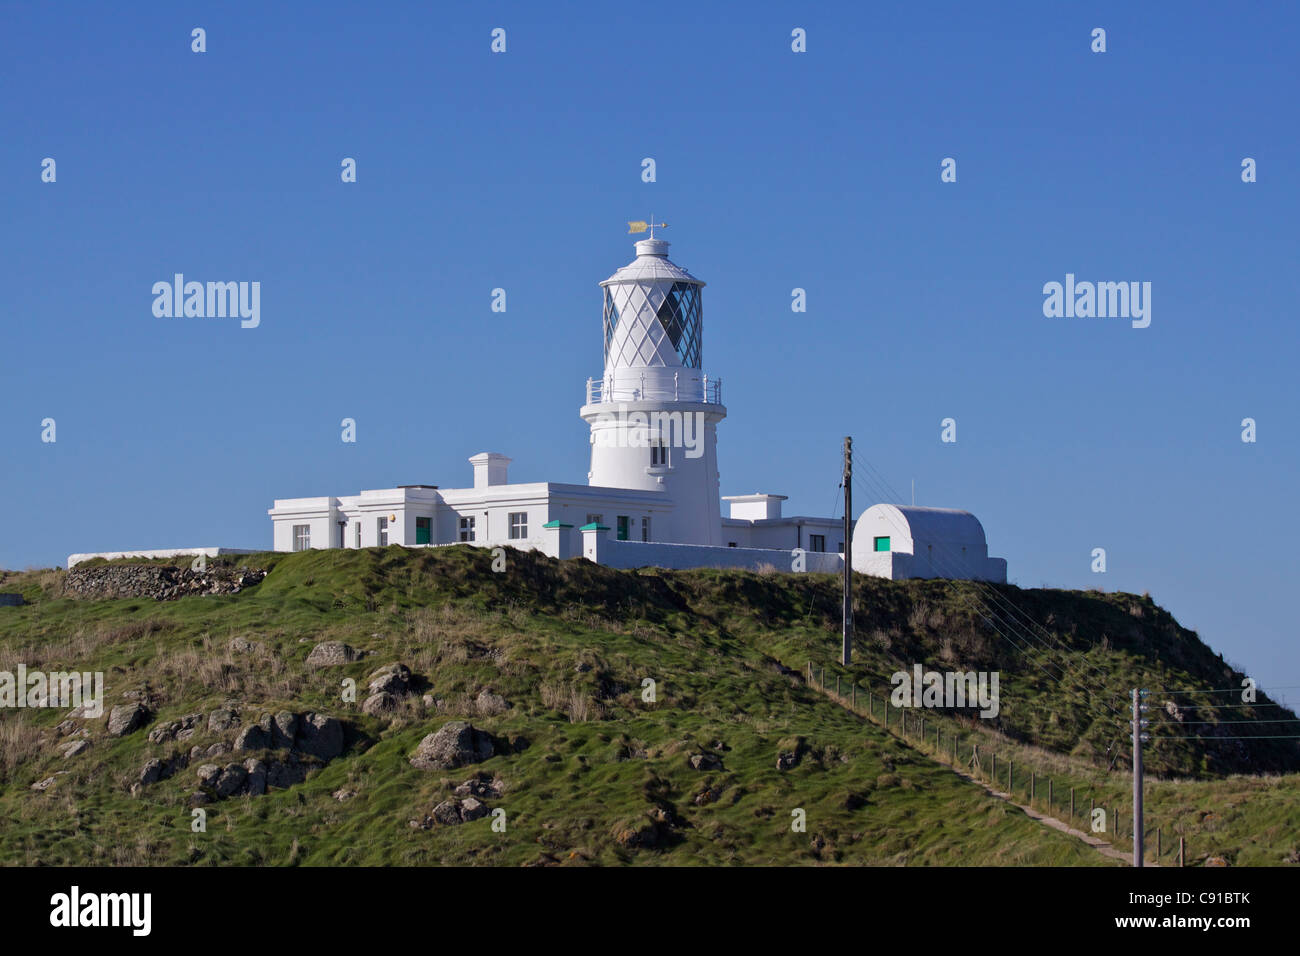 Strumble Head Lighthouse (elettrica e senza equipaggio) fu costruito nel 1908-09 e sorge su St. Michael's Island (gallese - Ynys Meicel) Foto Stock